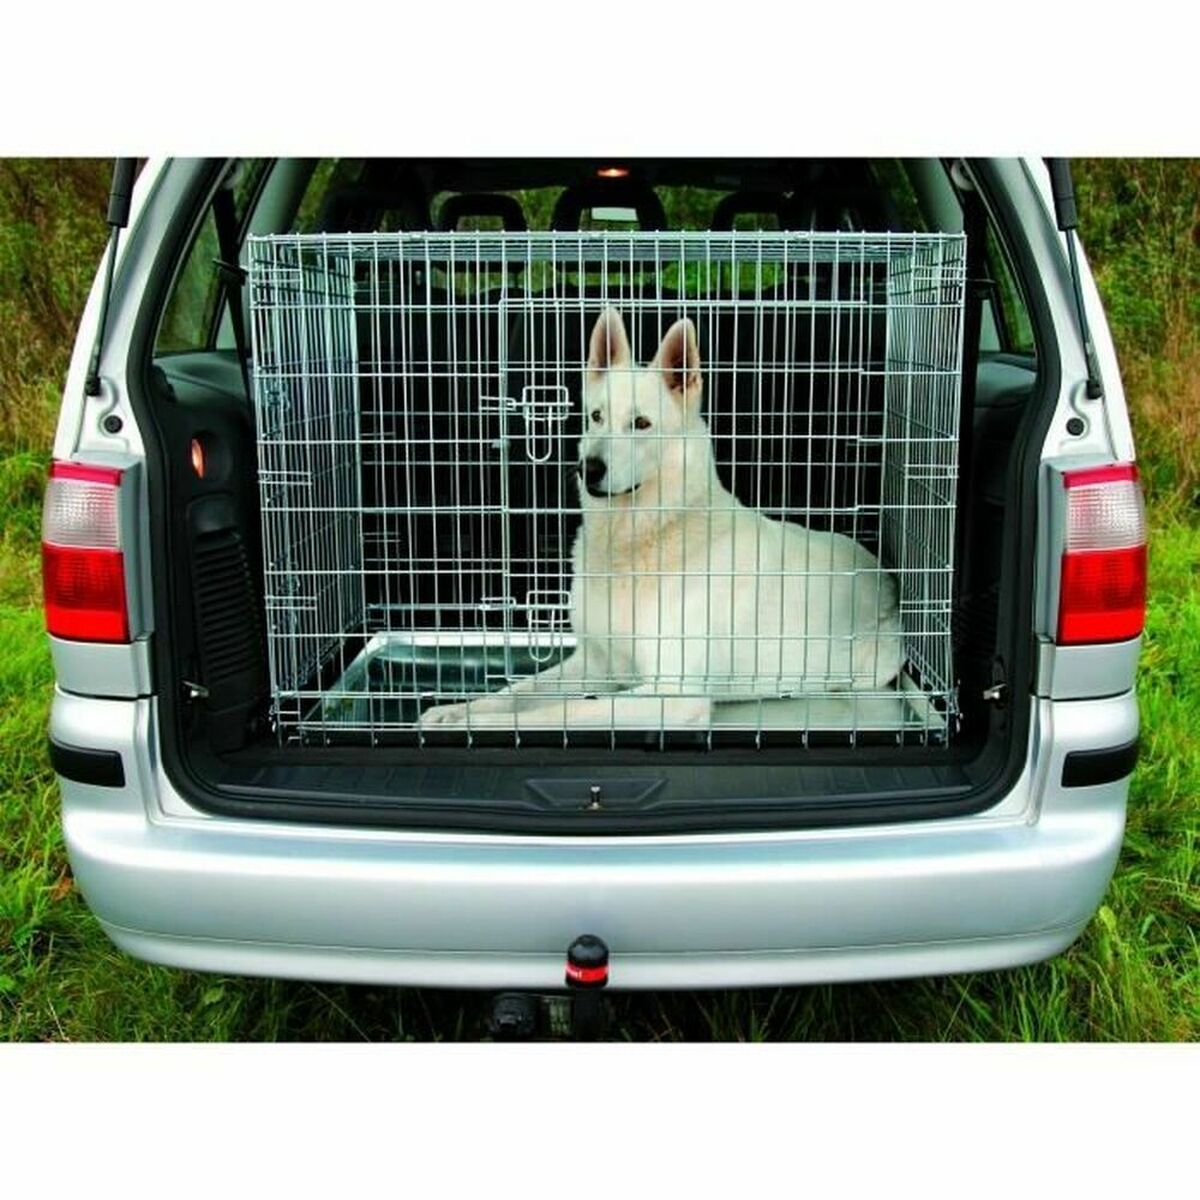 Transportkooi voor huisdieren Trixie 93 x 69 x 62 cm